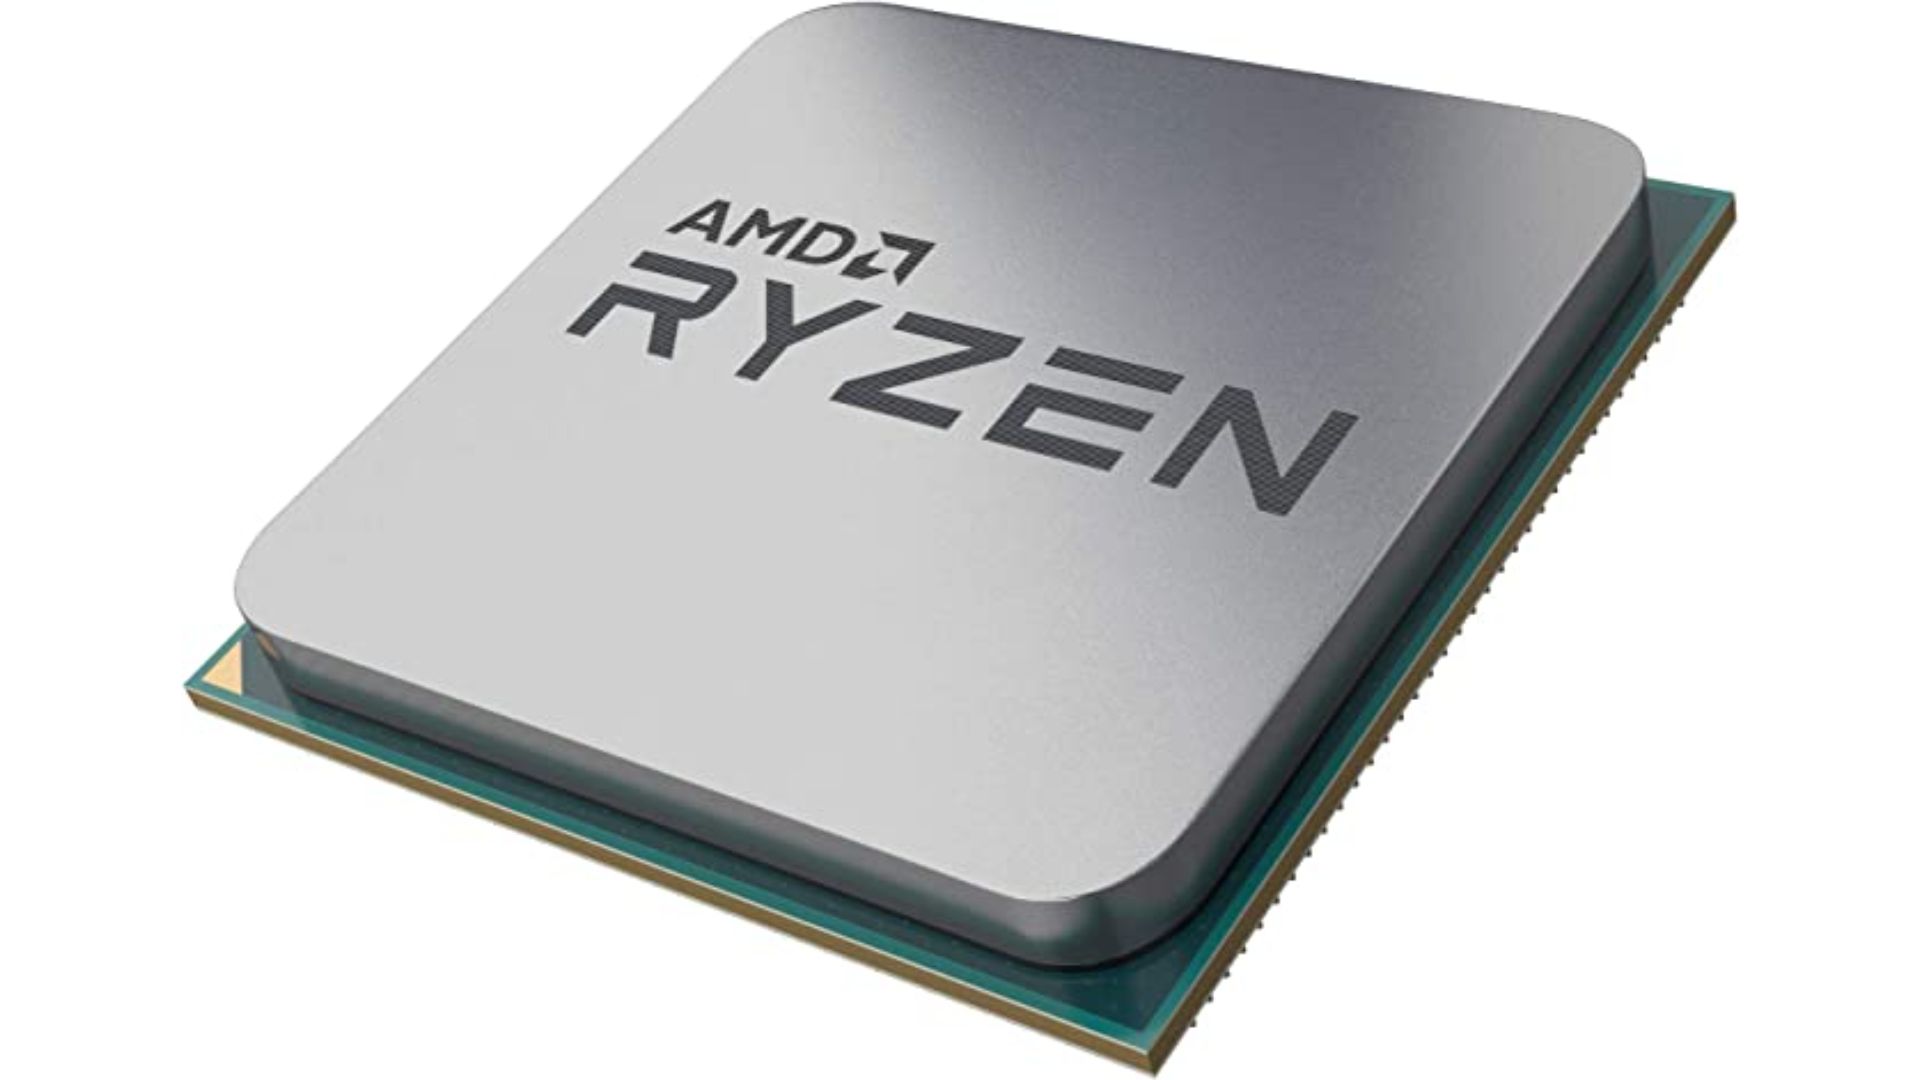 AMD Ryzen 5 - Best AMD CPU For Solidworks Under 100$